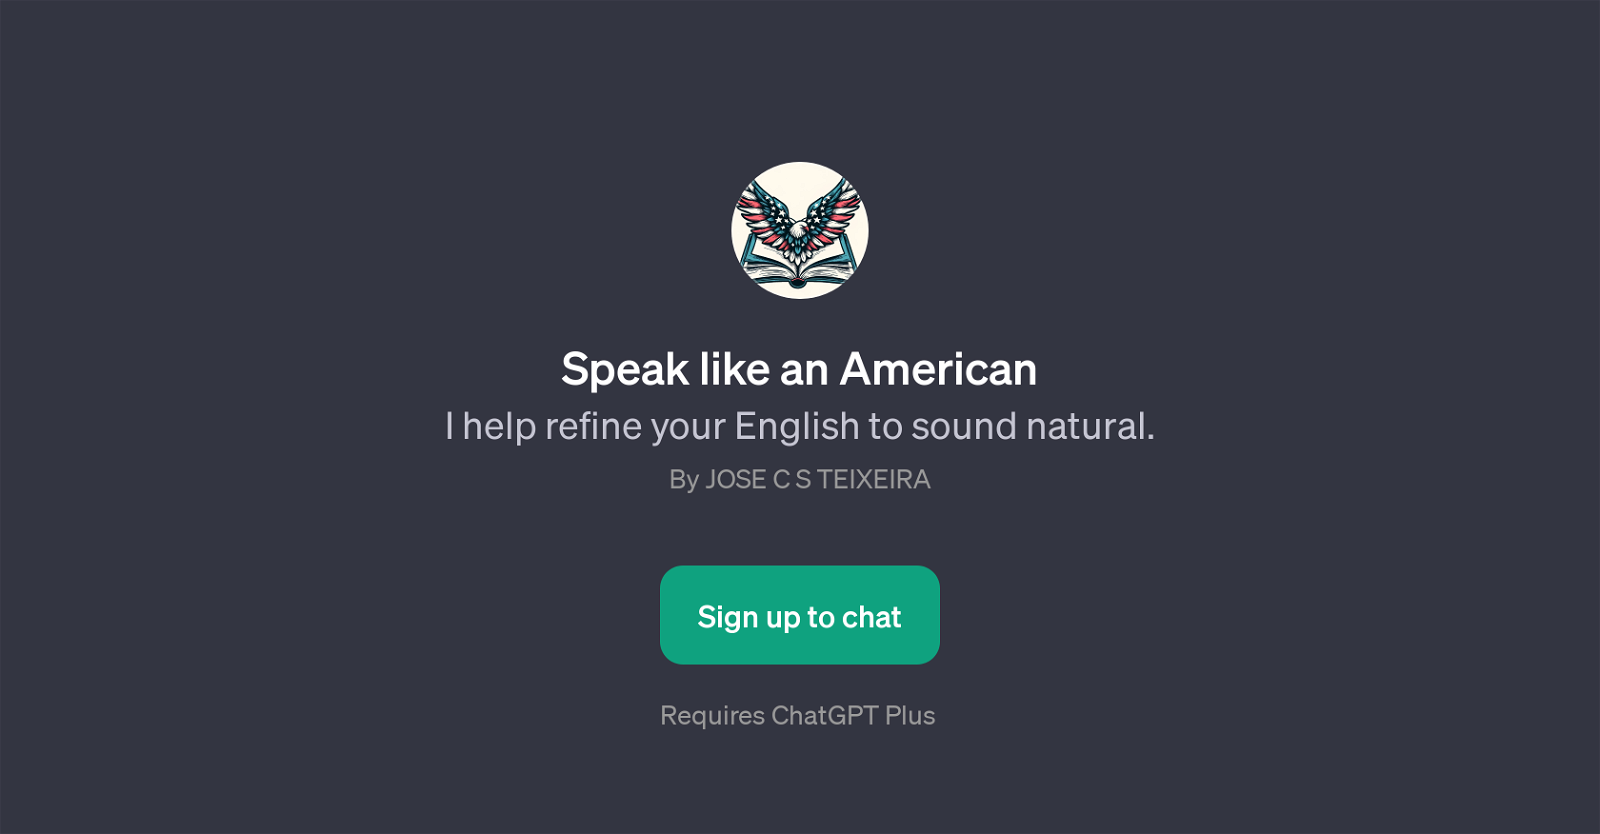 Speak like an American website